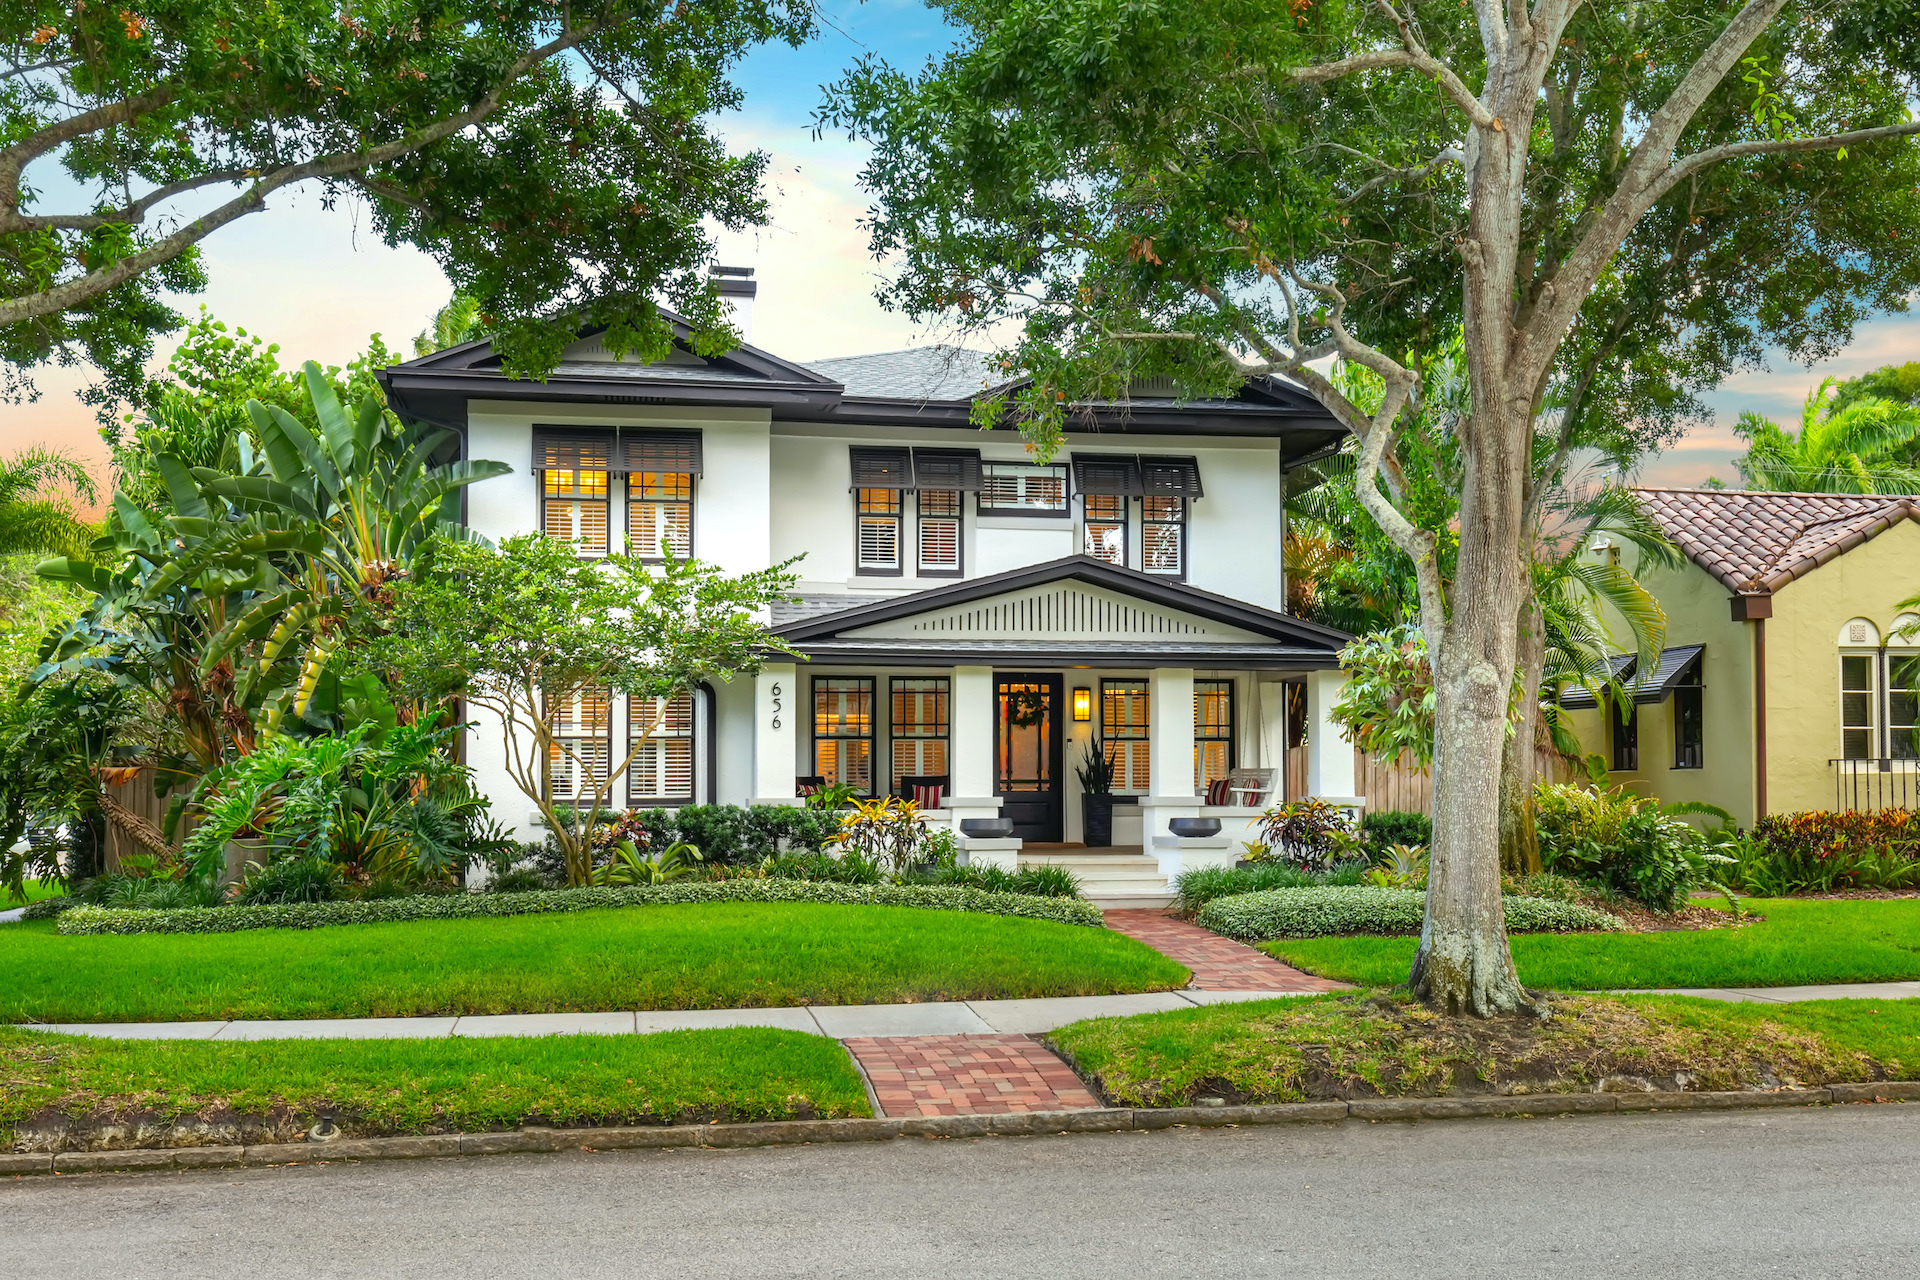 Amanda Lauser | Smith & Associates Real Estate | REALTOR | Home